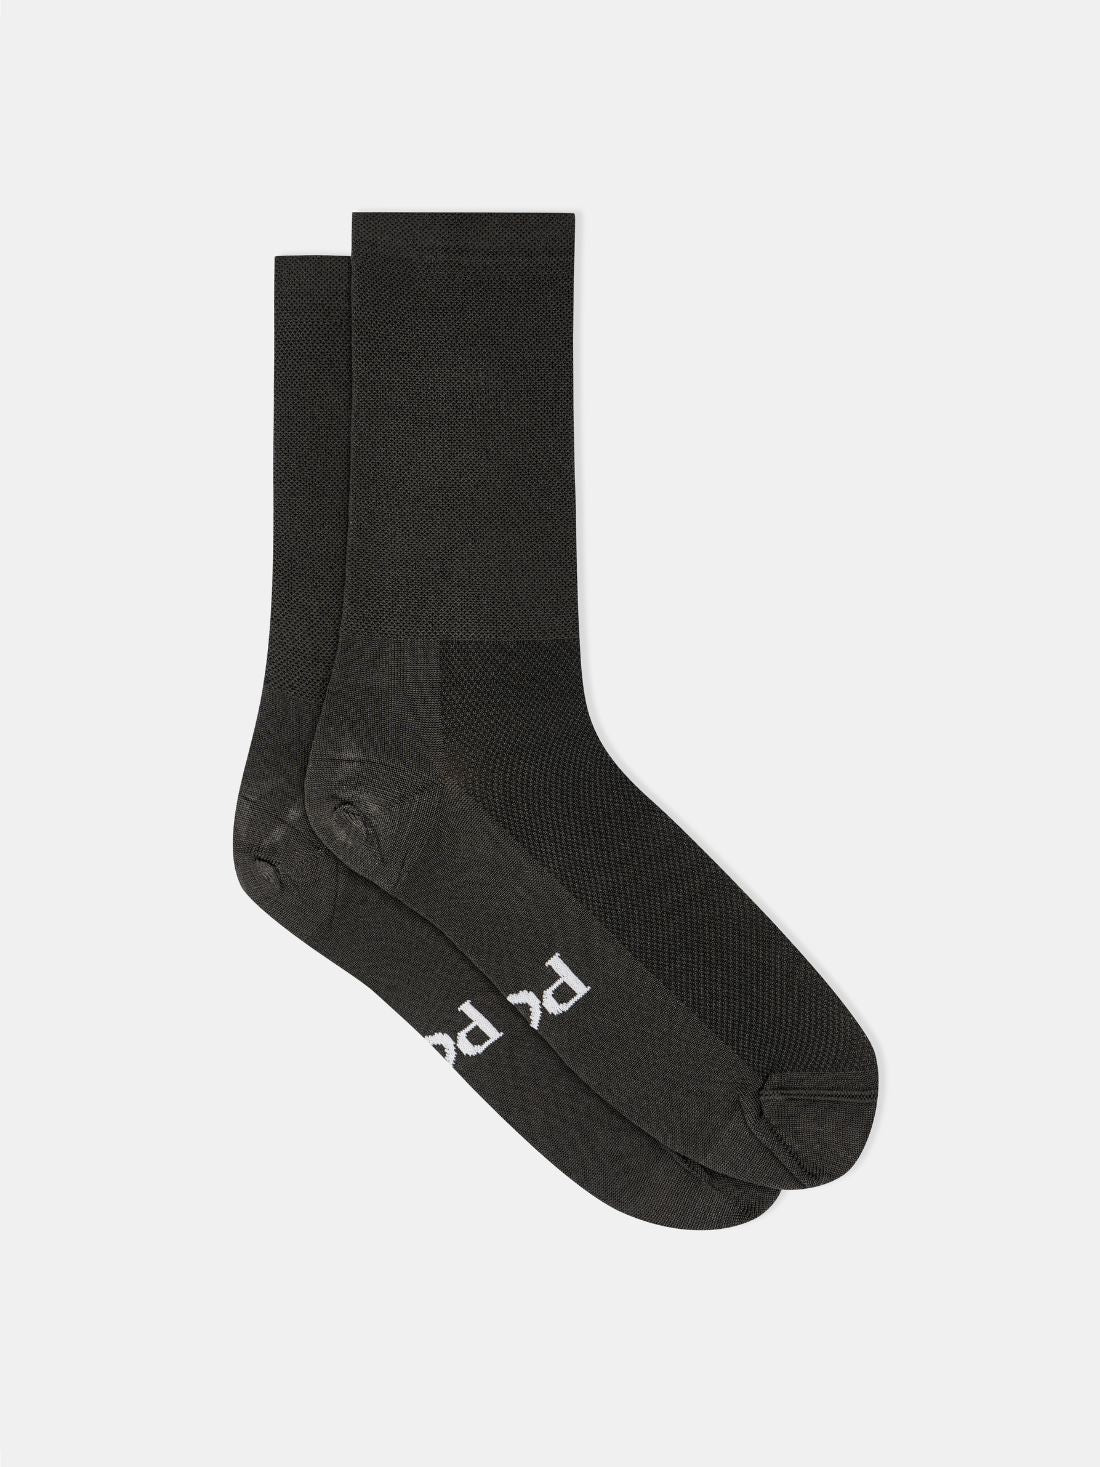 Permanent Charcoal Socks